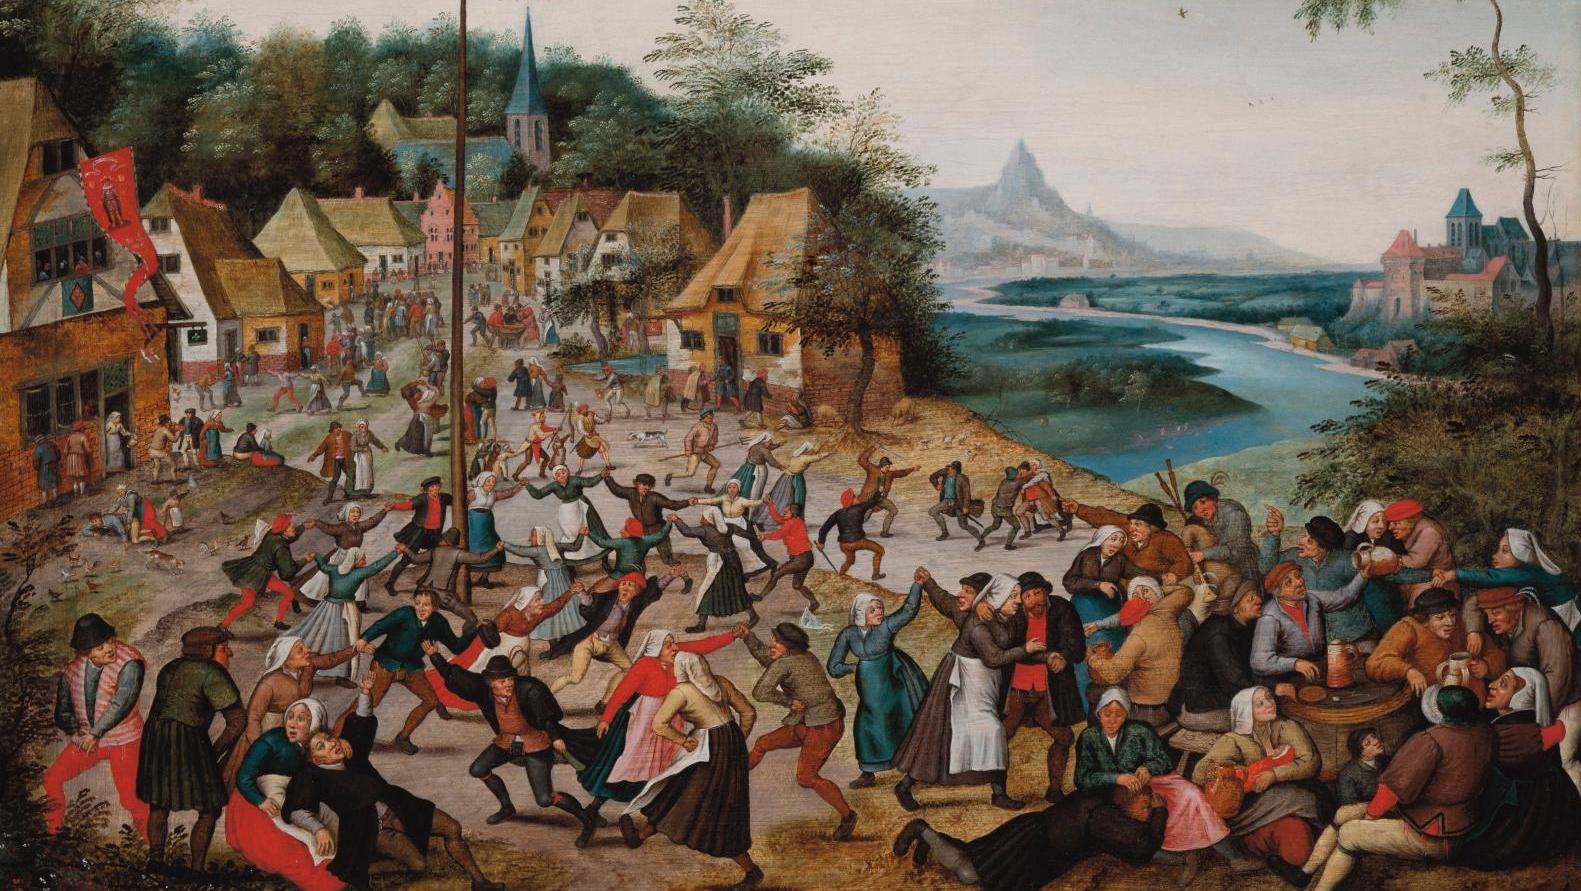 Pieter Bruegel le Jeune (1564-1636), Kermesse de Saint-Georges et la ronde autour... Brafa, une foire plus séduisante que jamais